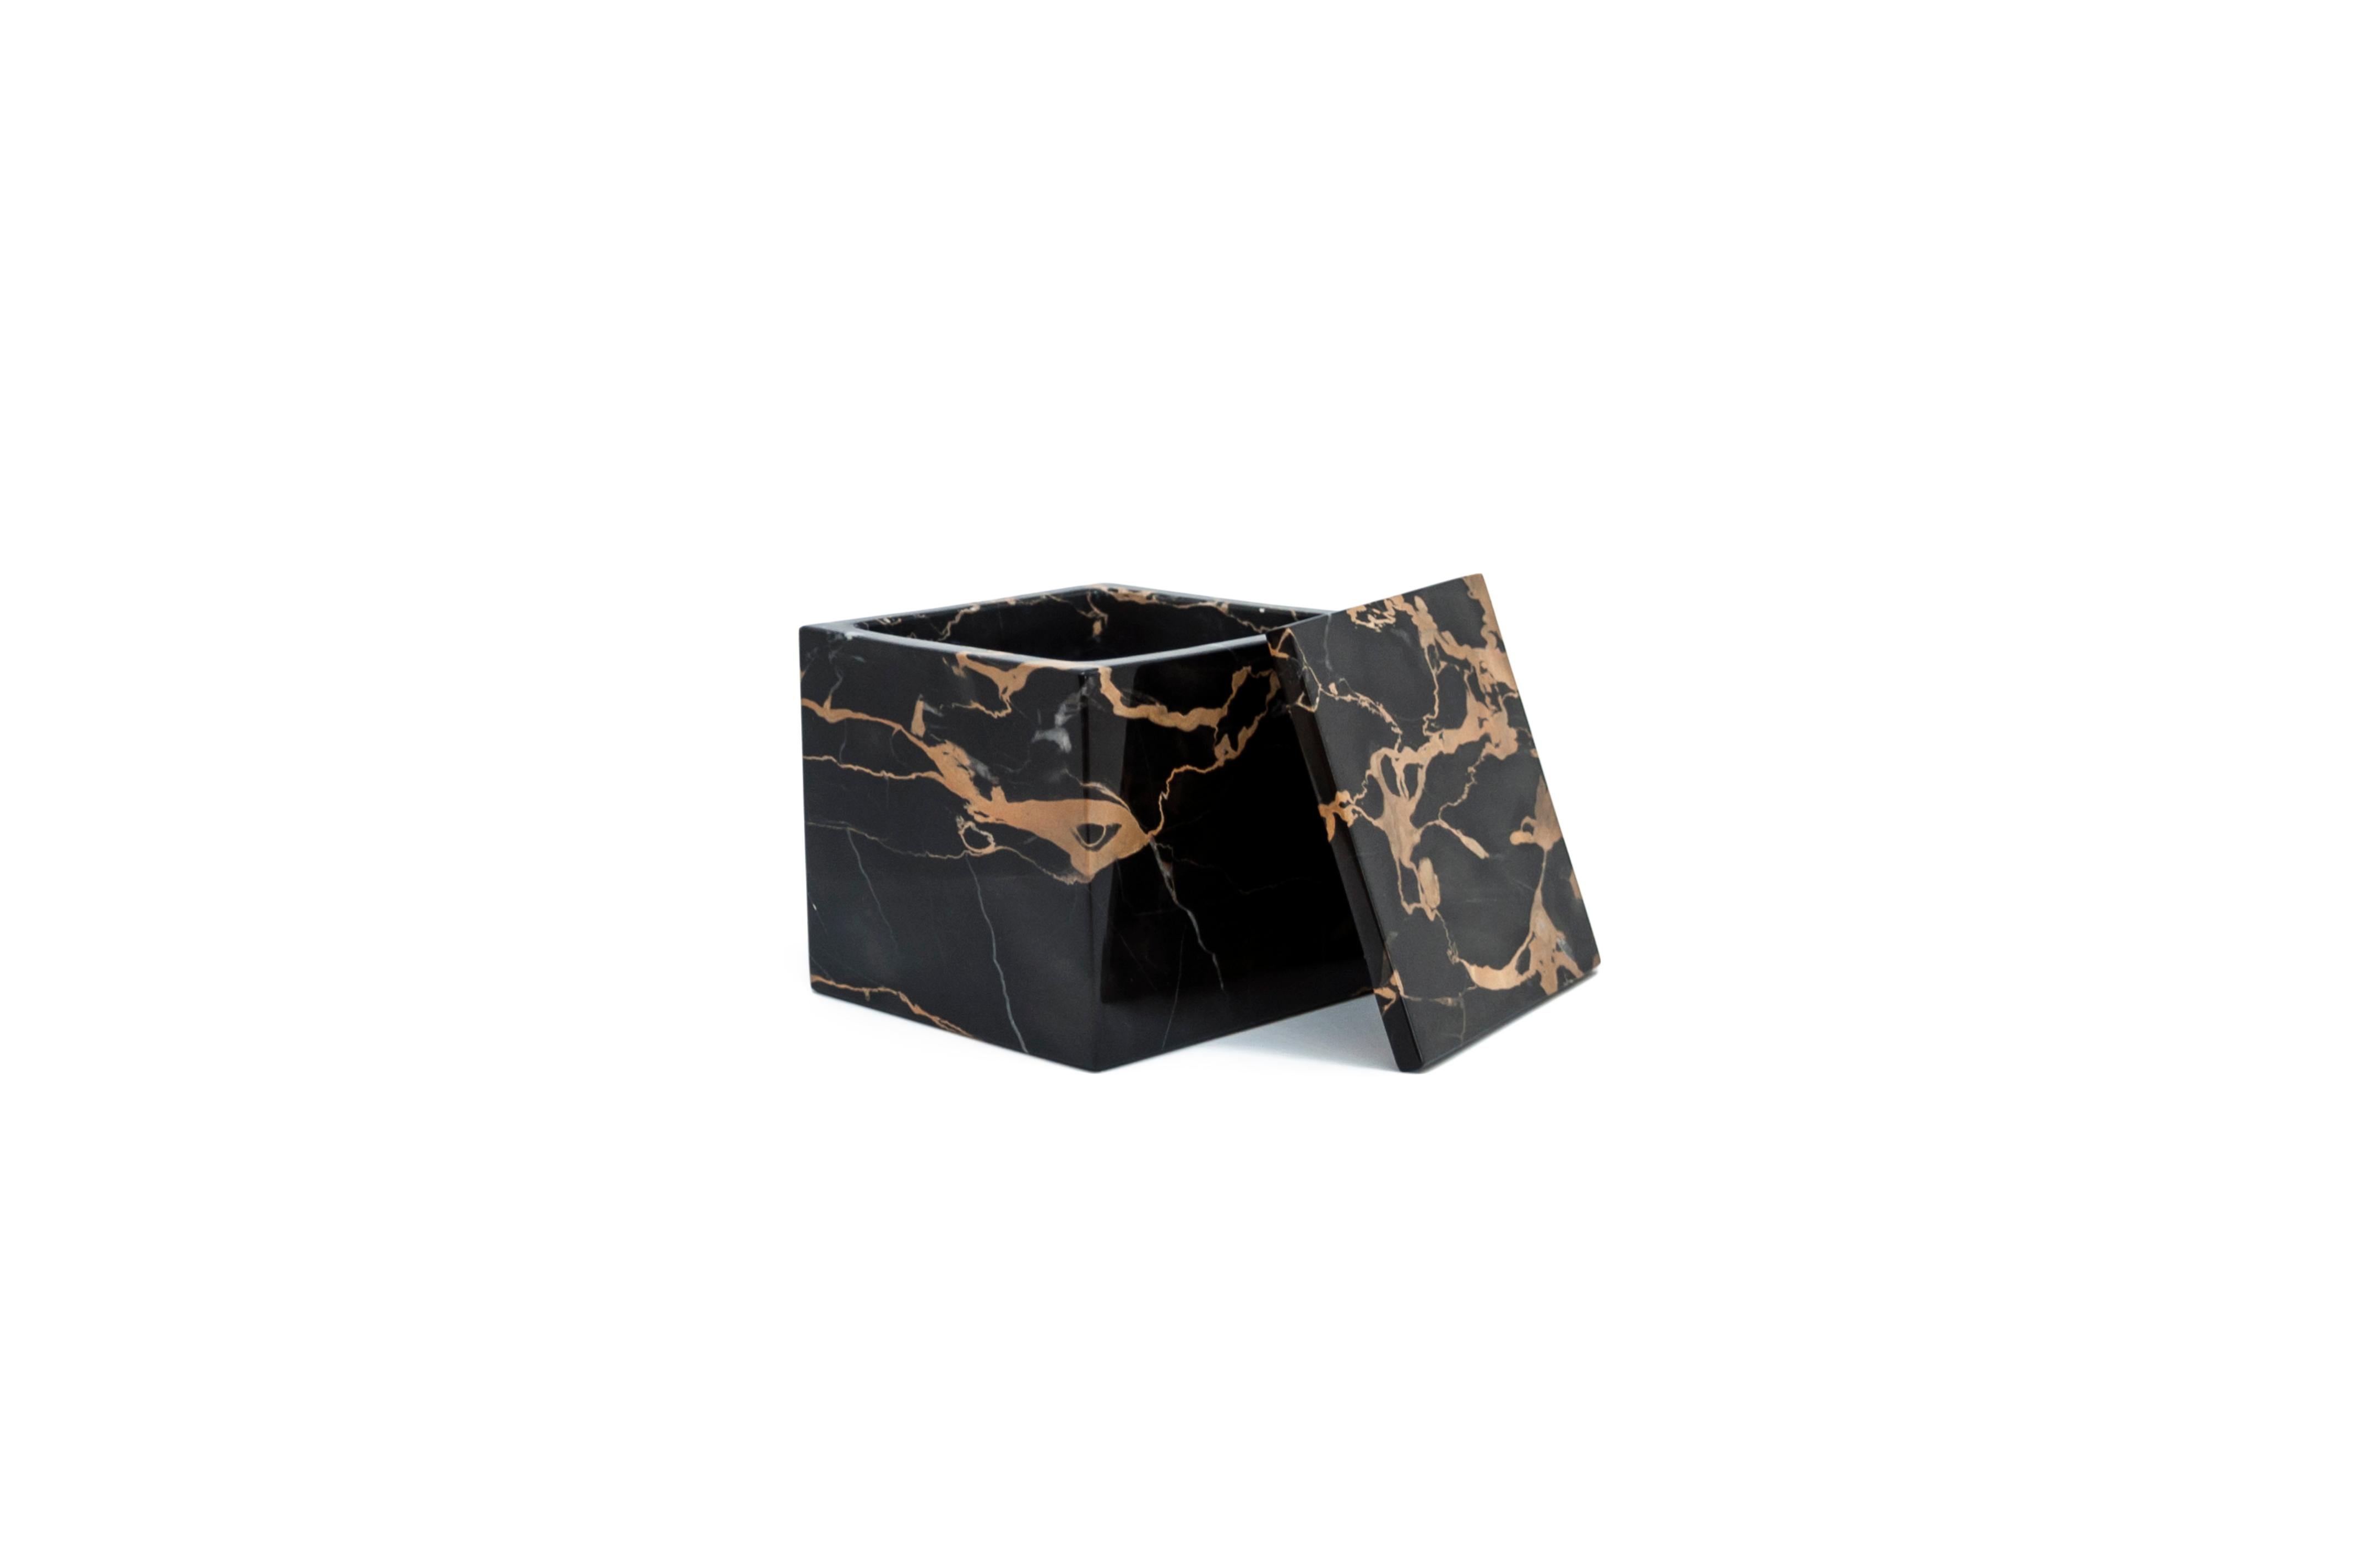 Un porte-boîte carré de luxe dans le rare et beau marbre Portoro caractérisé par une base de couleur noire et des veines naturelles dorées. Dimensions du porte-boîte : 9,5 x 9,5 x 9,5 cm.
Chaque pièce est unique (puisque chaque bloc de marbre